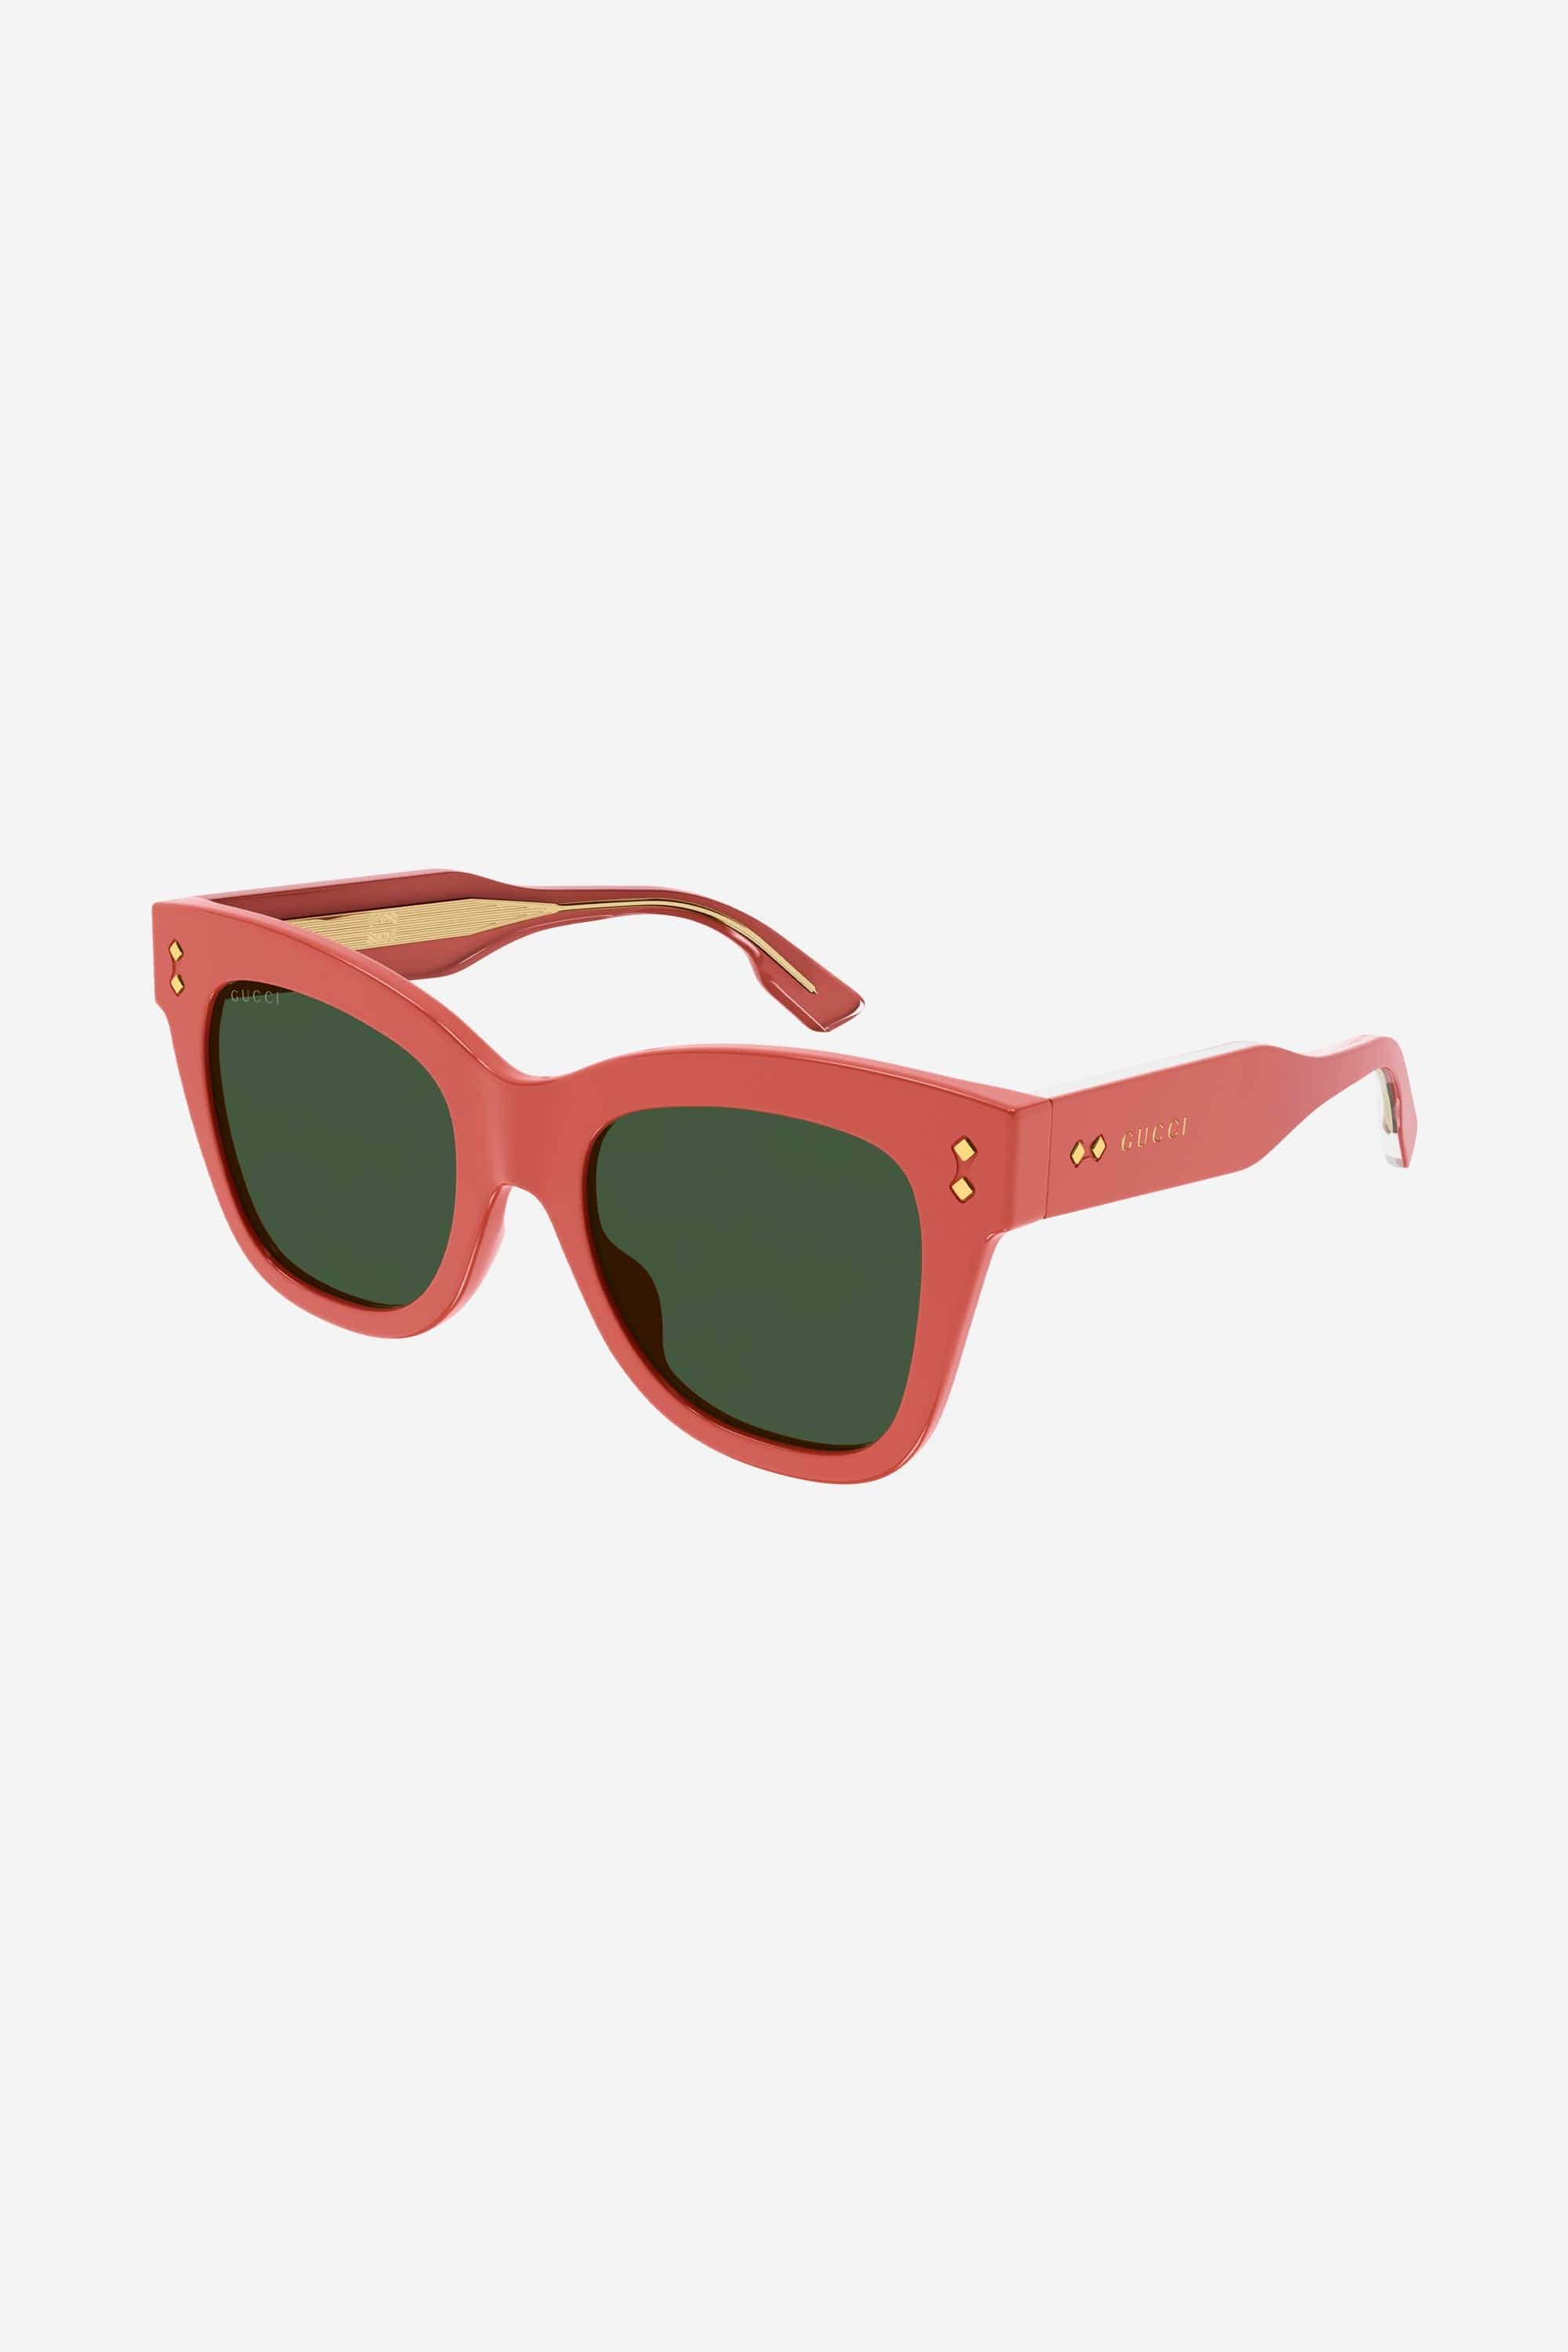 Gucci cat-eye pink sunglasses - Eyewear Club